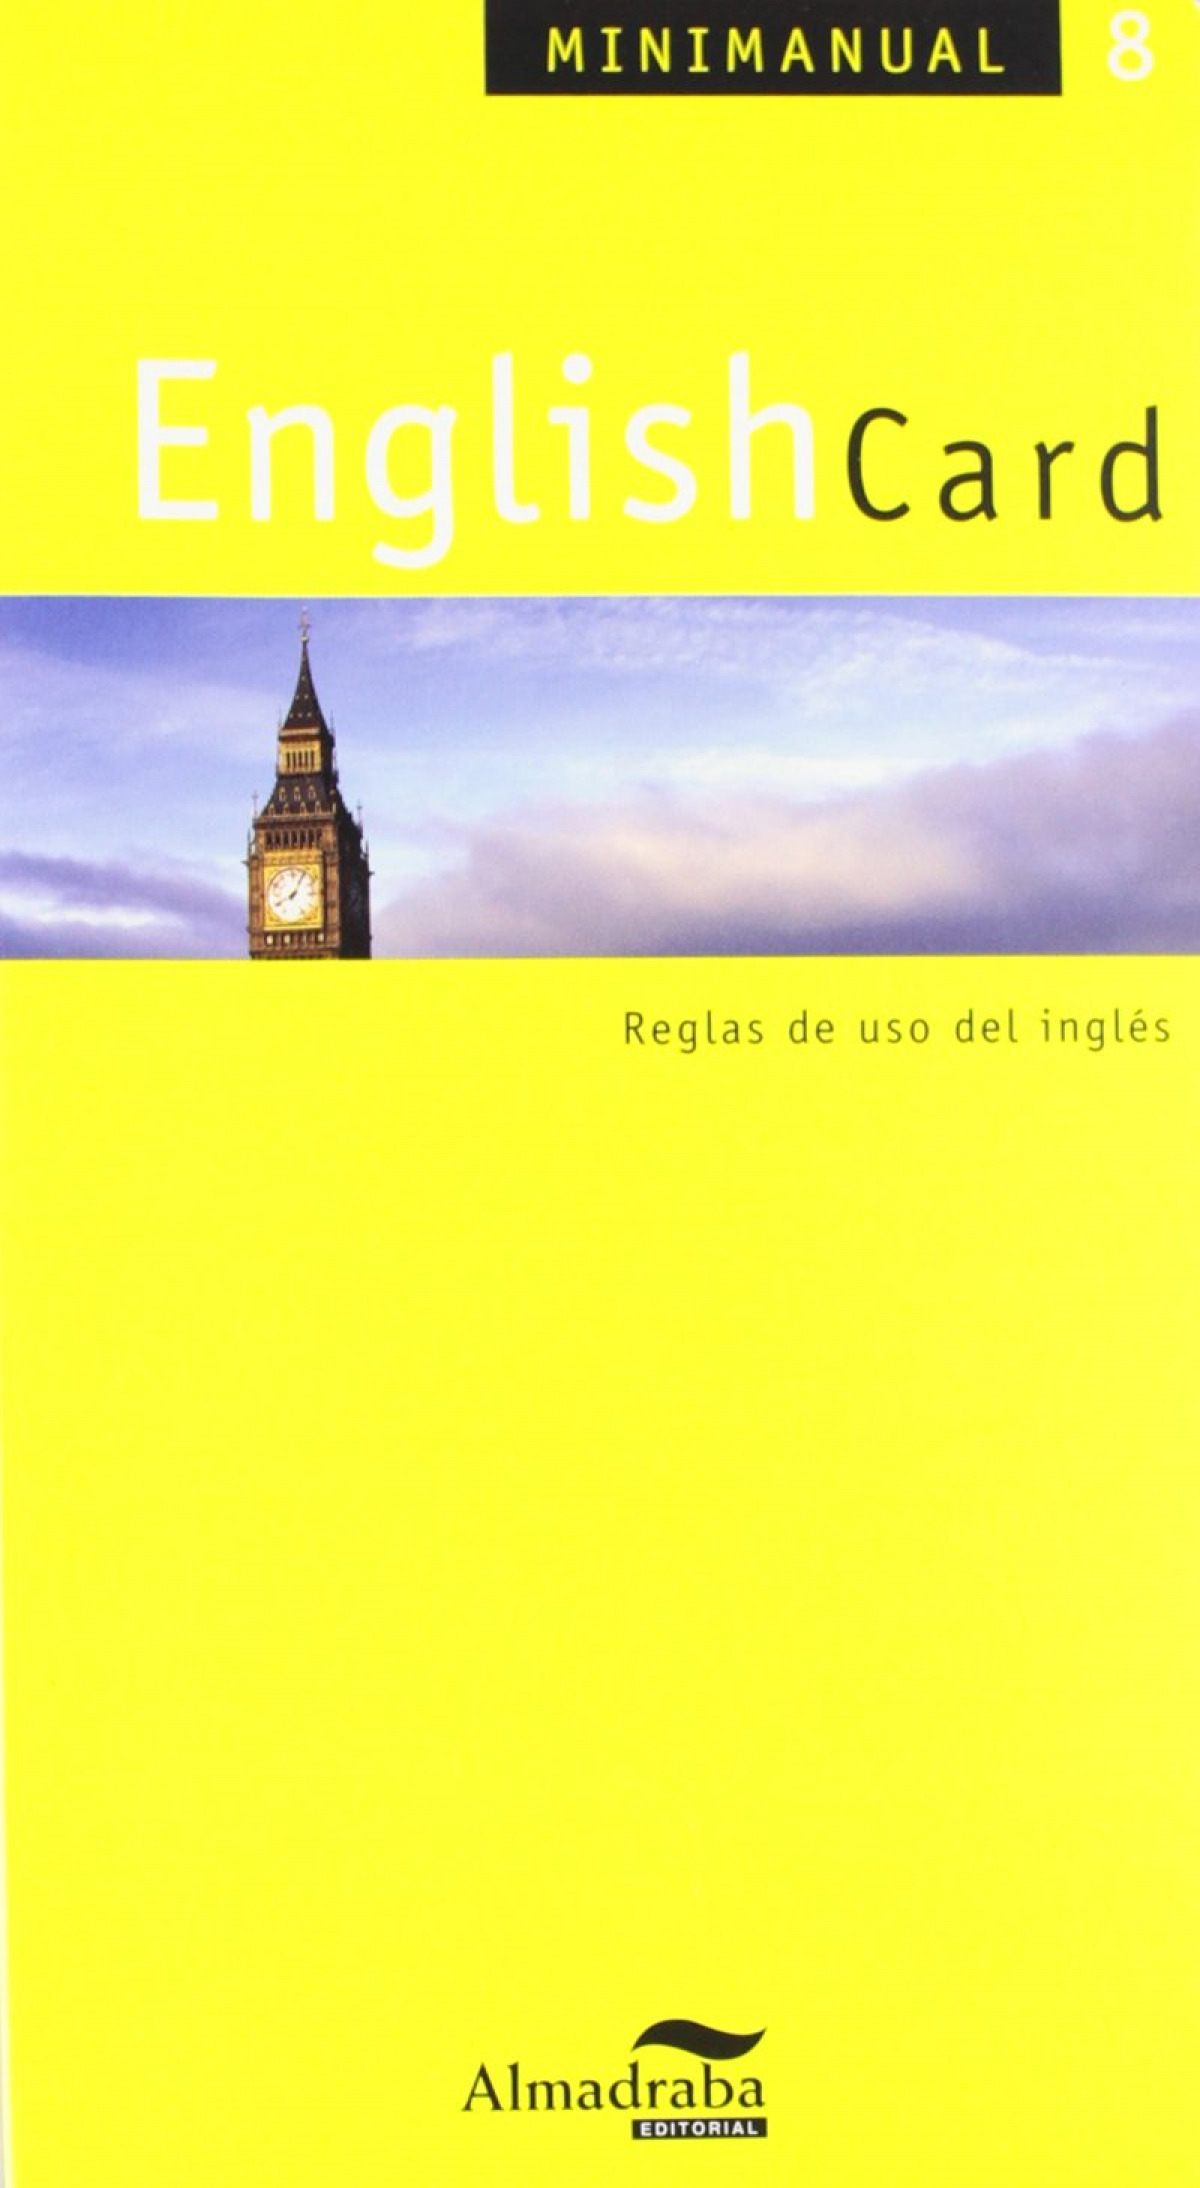 EnglishCard - Hermes Editora General, S.A.U.